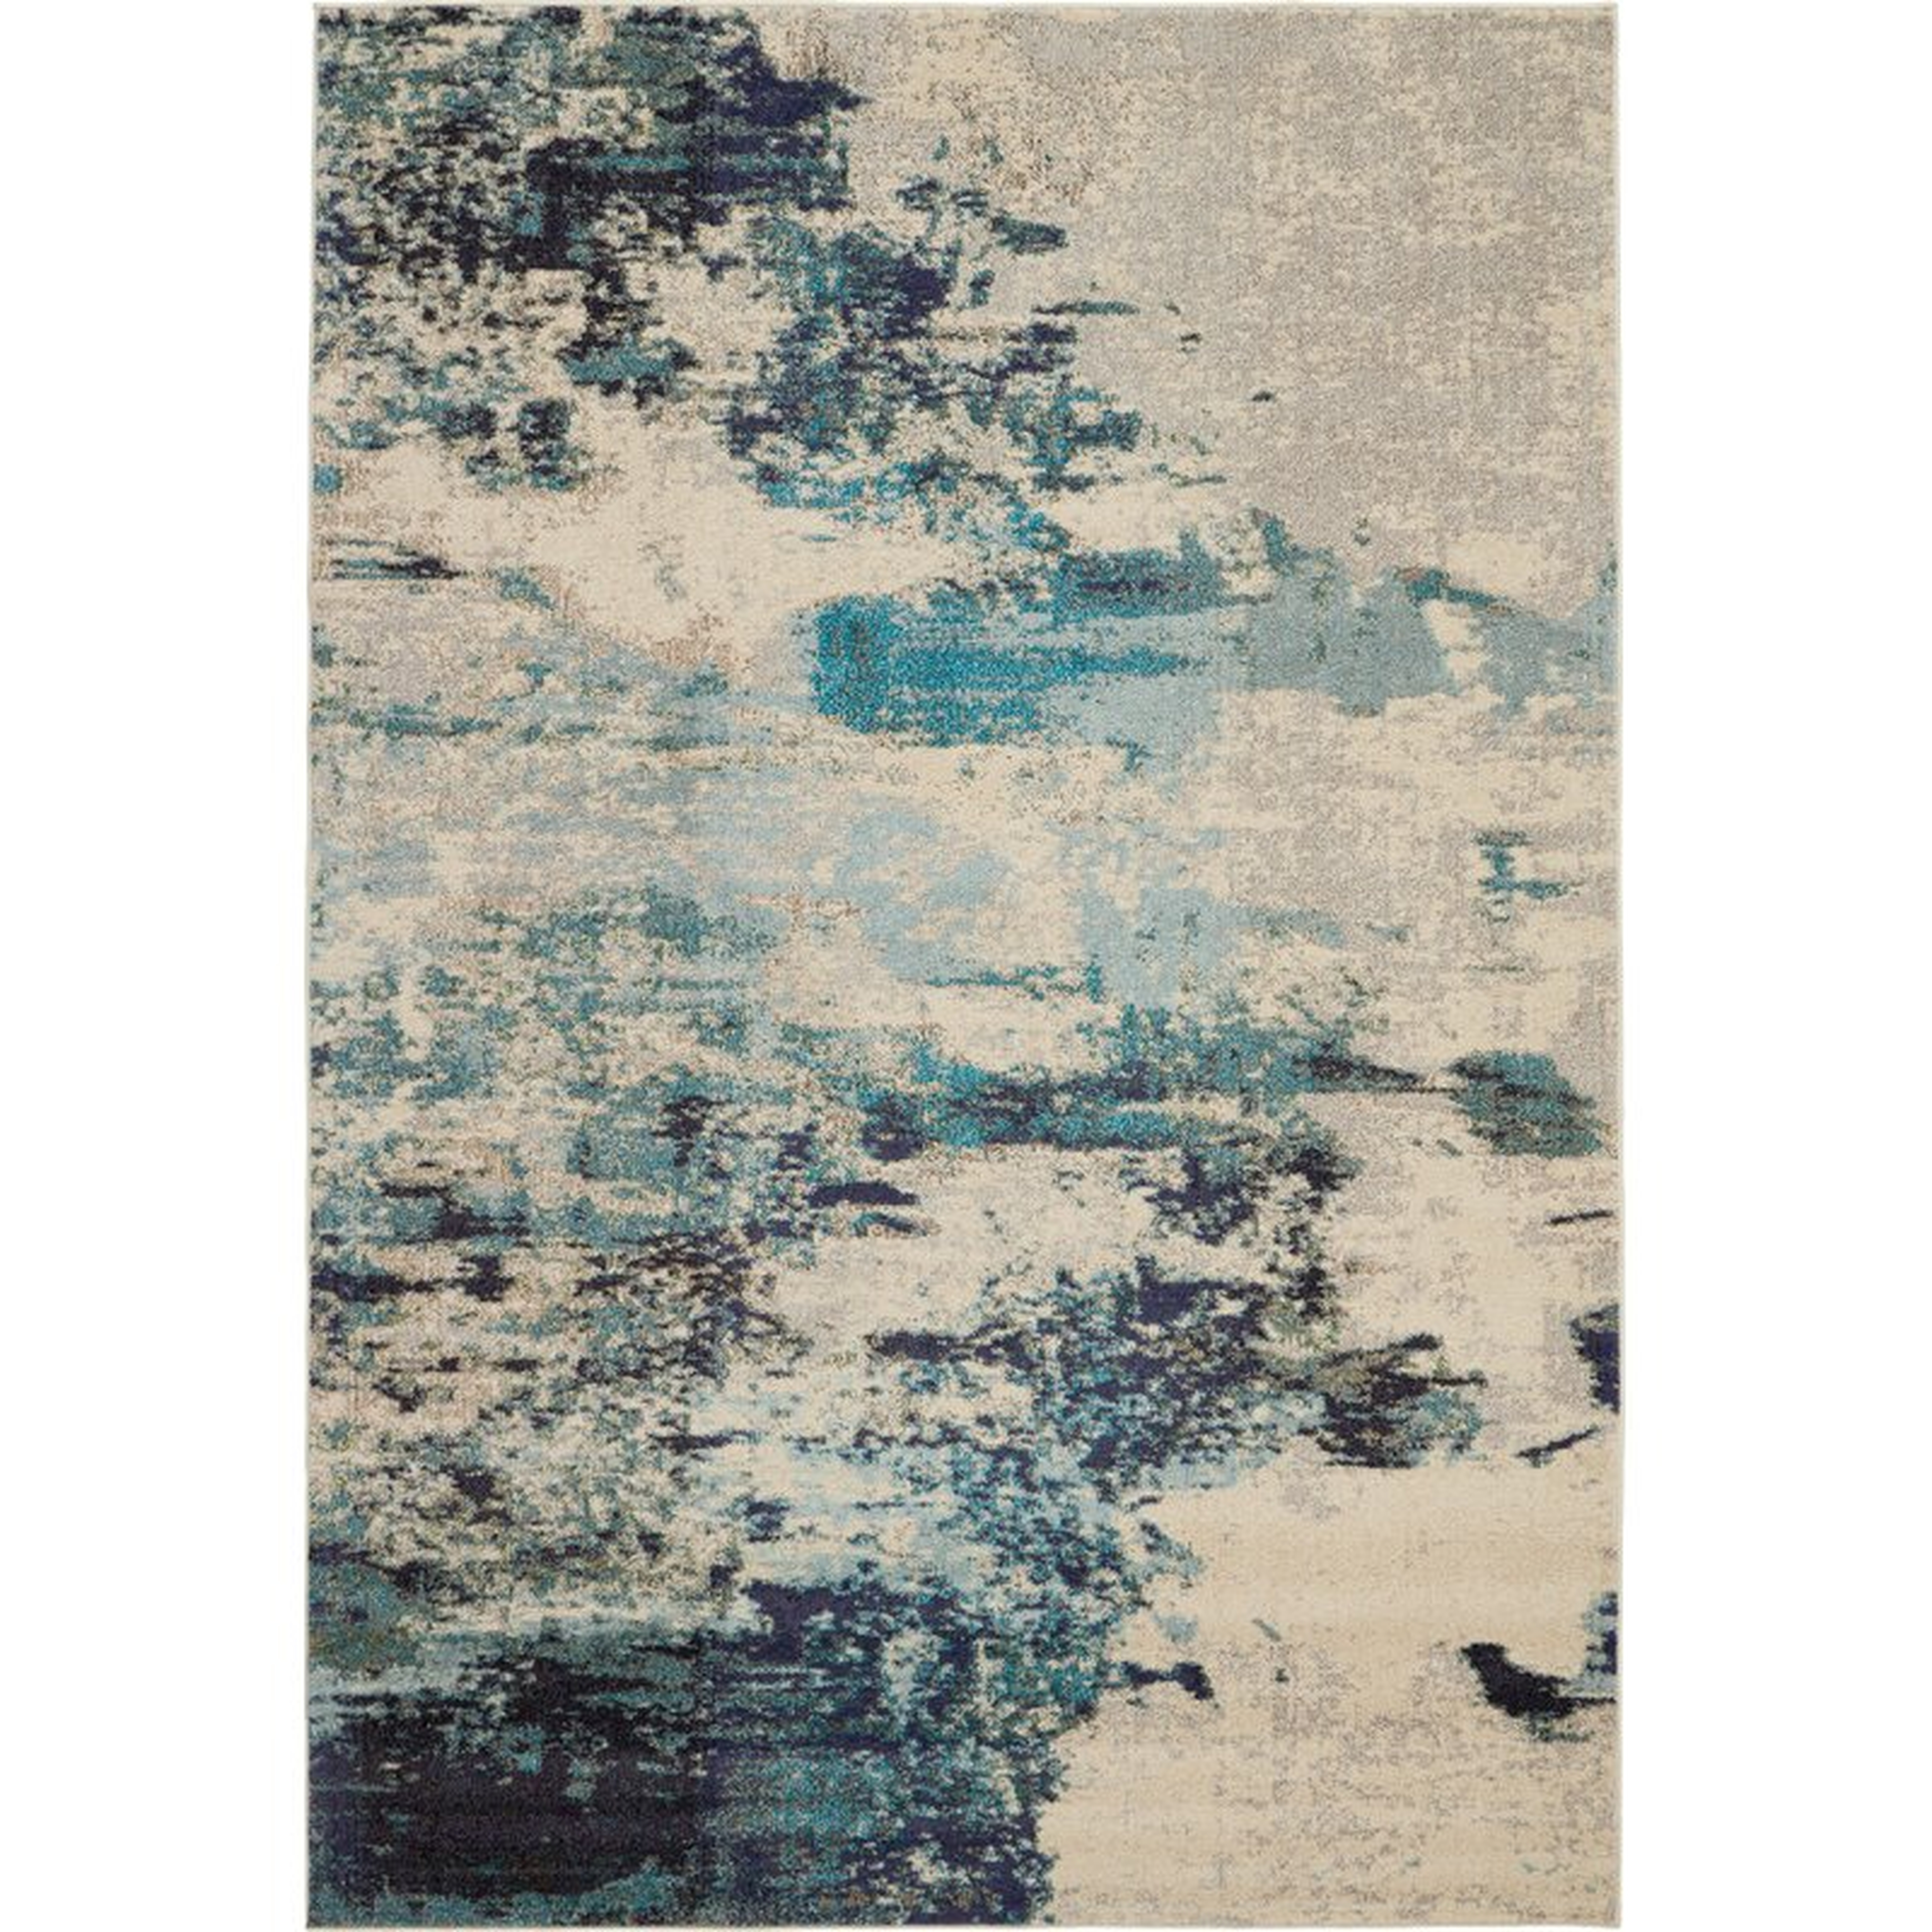 Talmo Ivory/Teal Blue Area Rug, 9x12' - Wayfair